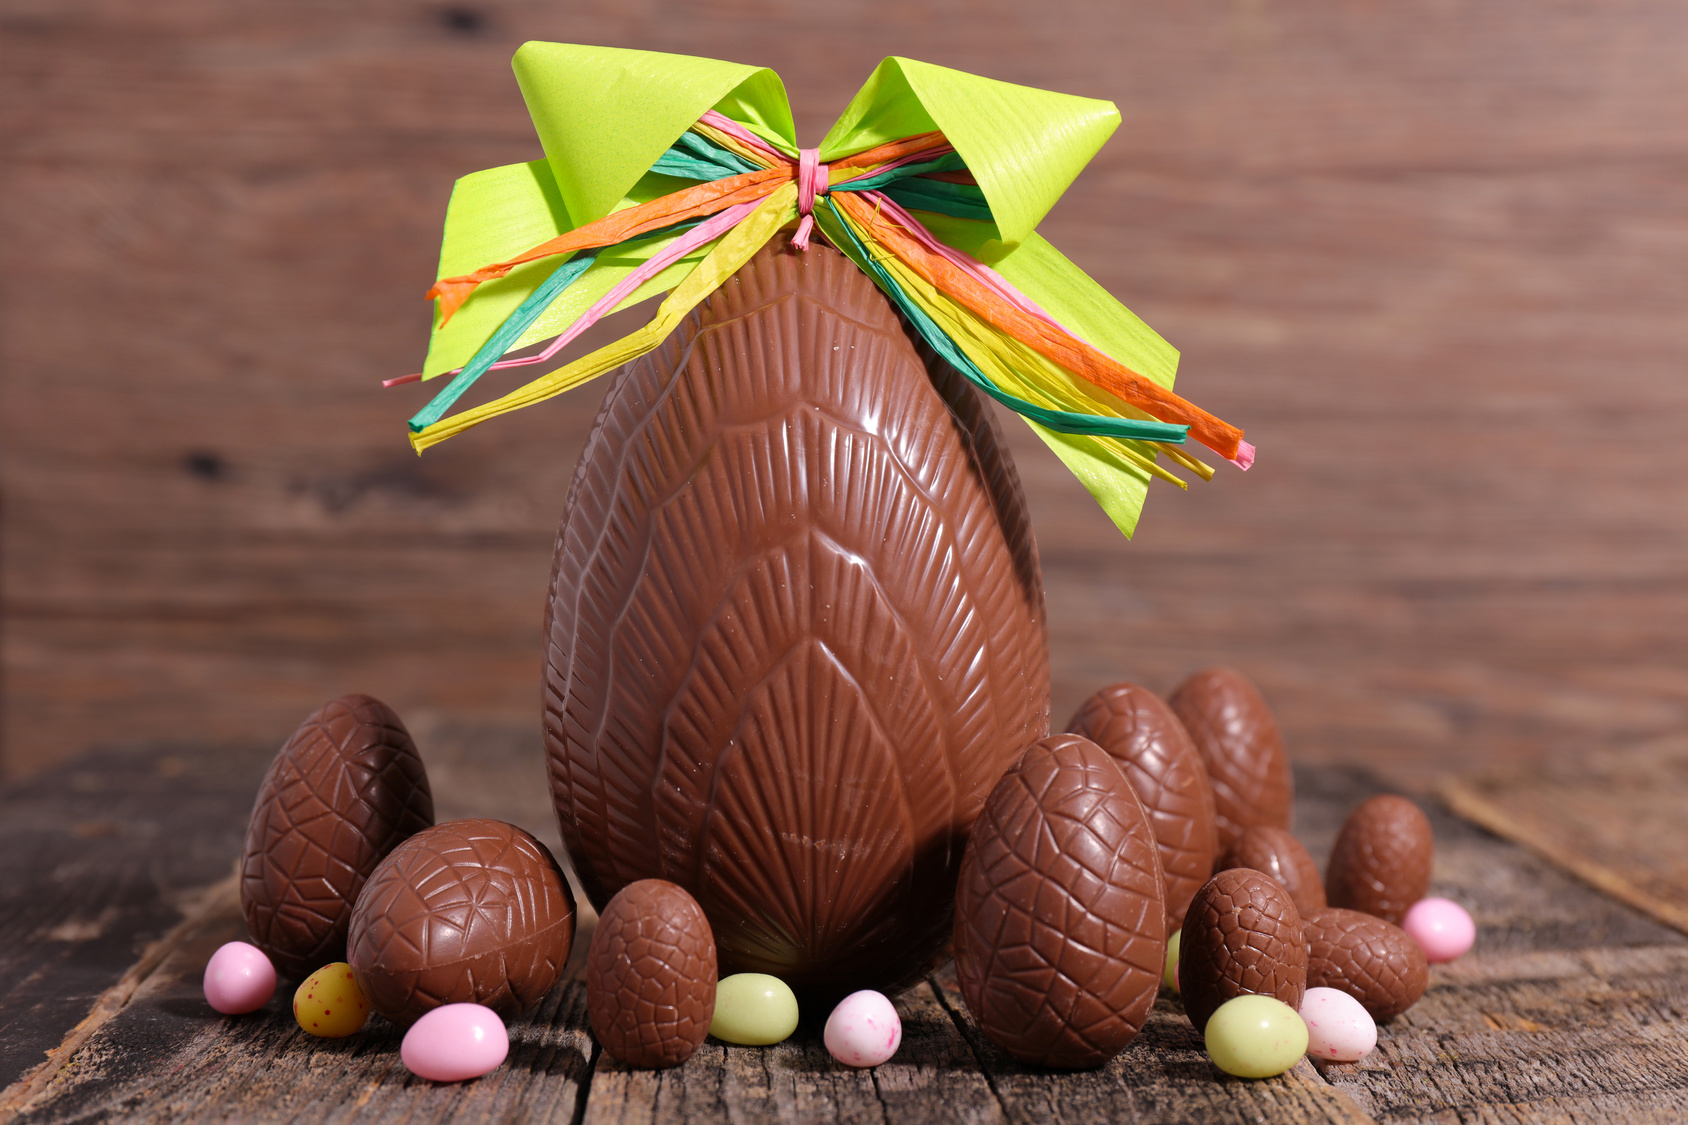 Perché a Pasqua si regalano uova di cioccolato? - Alla Birba c'è